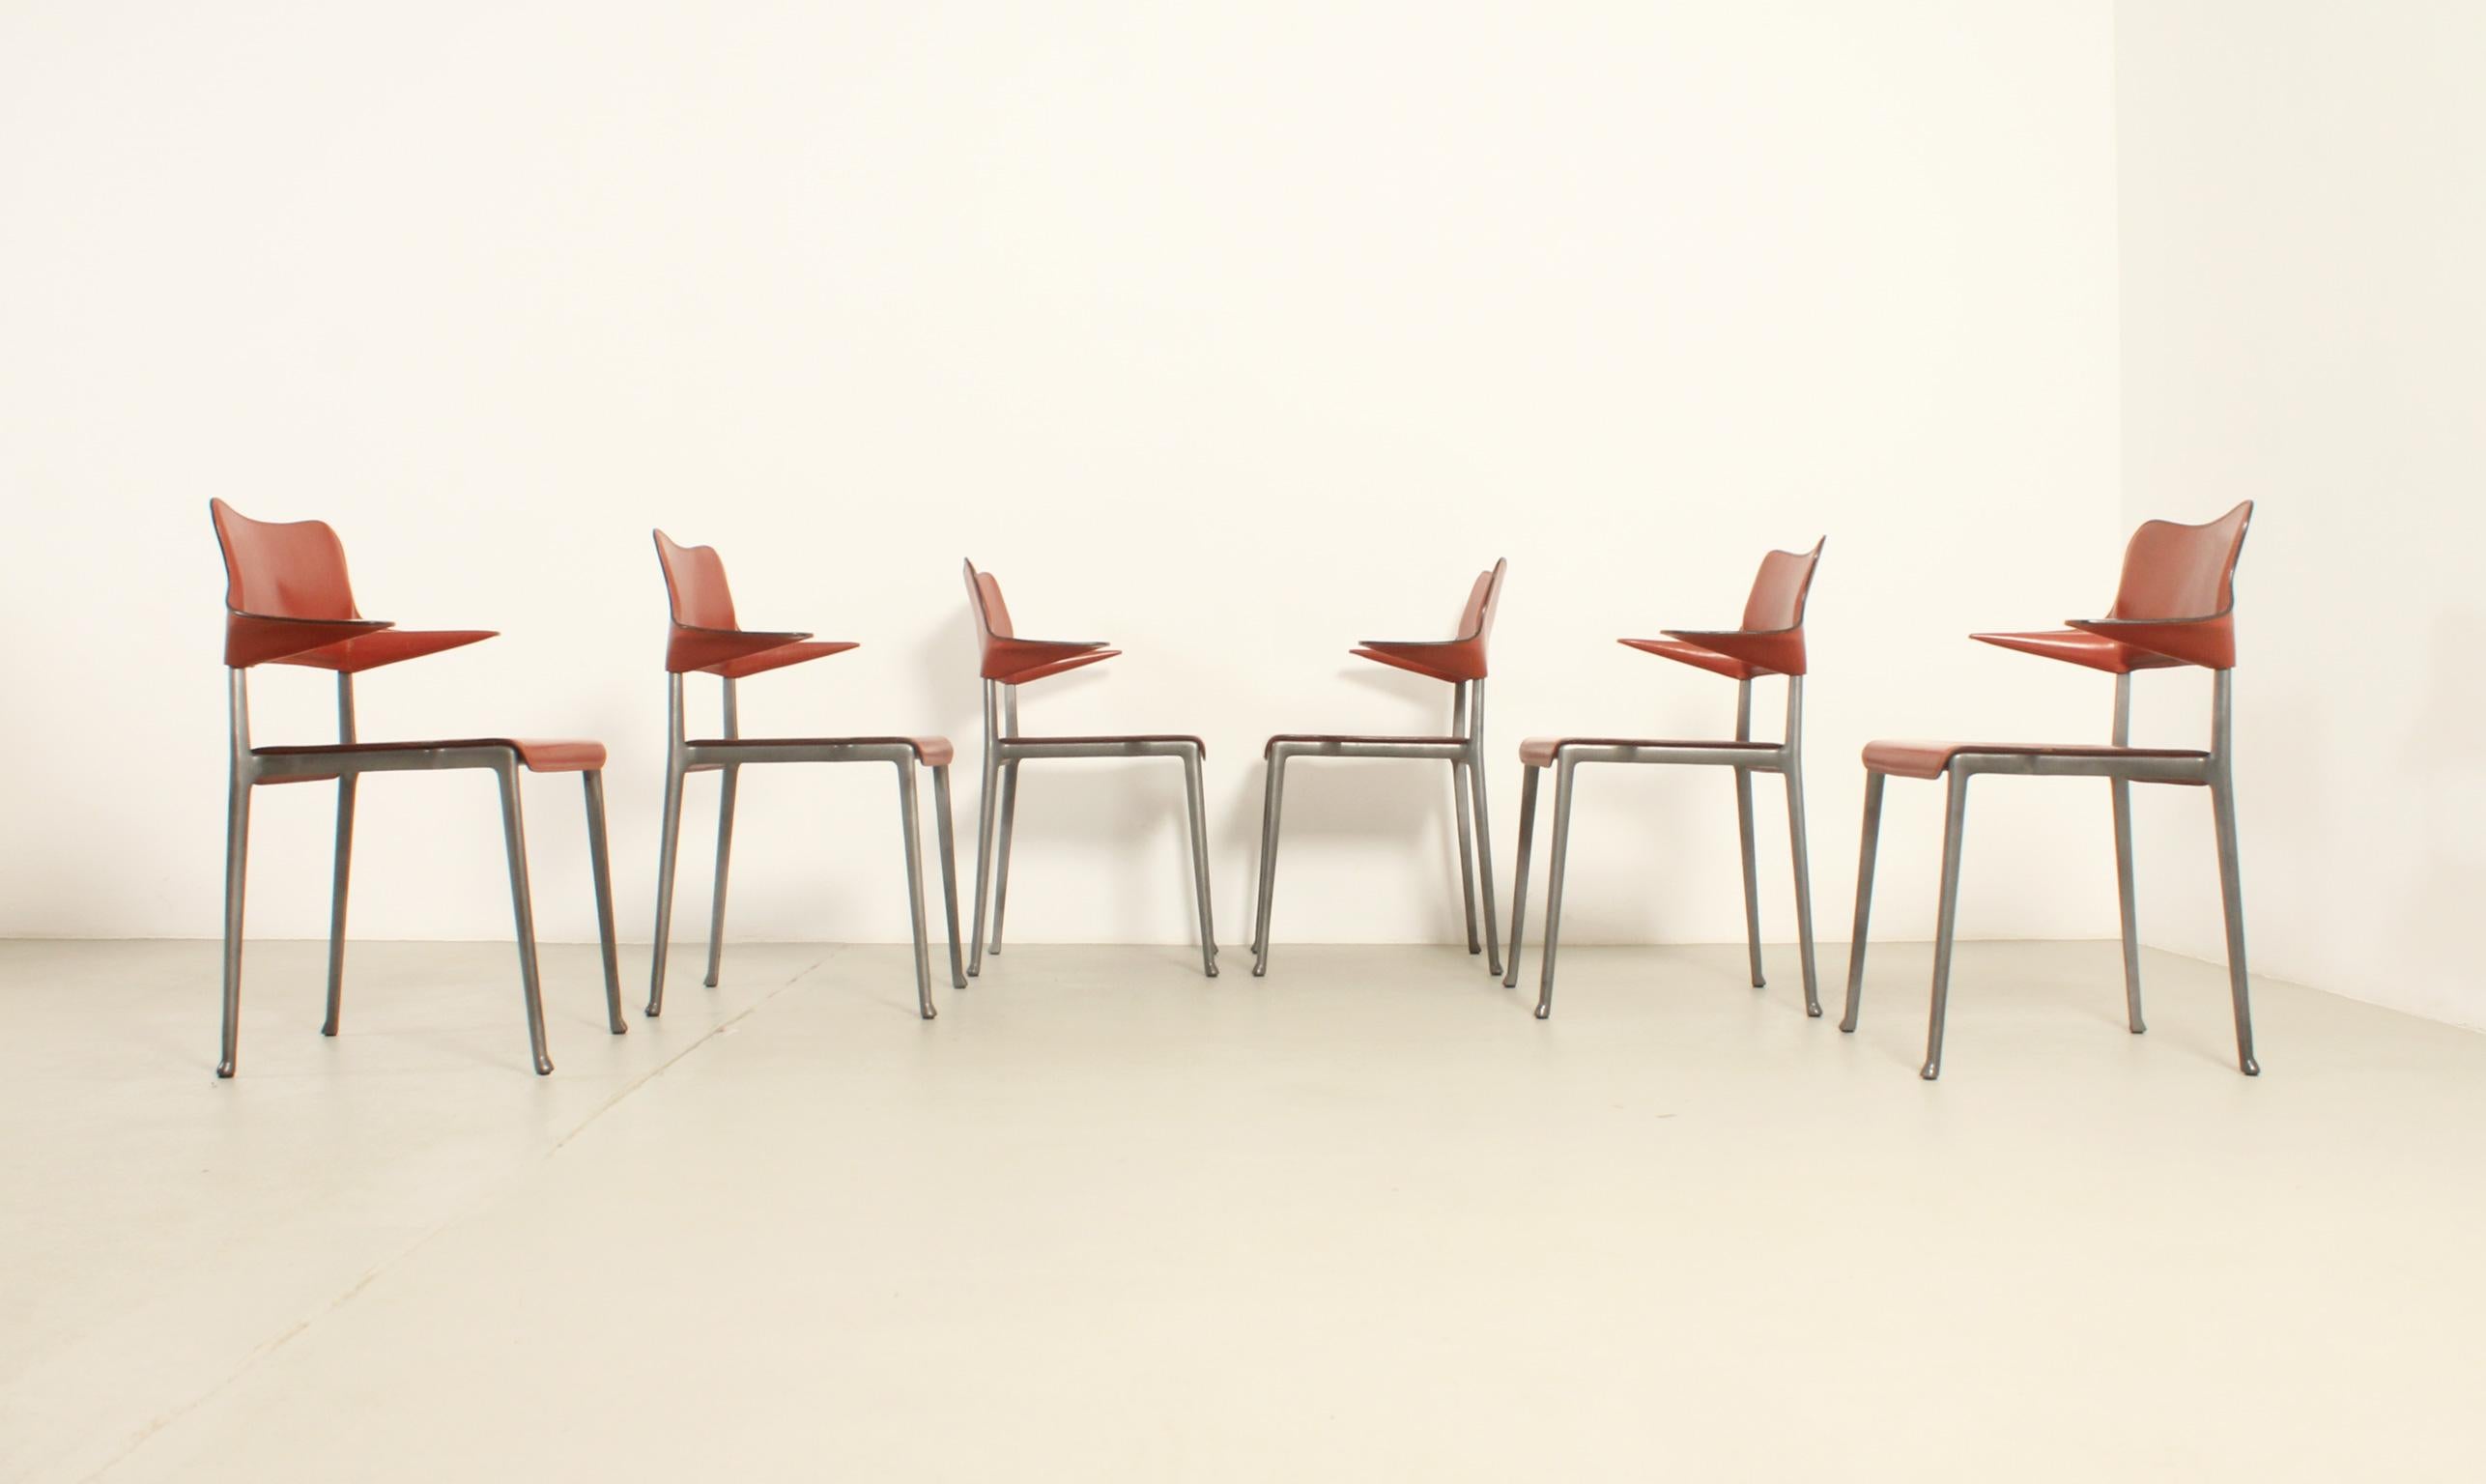 Ensemble de six chaises Kumo conçues en 1989 par le designer japonais Toshiyuki Kita pour la société espagnole Casas et produites pendant une courte période. Structure en aluminium avec finition époxy et cuir épais. 